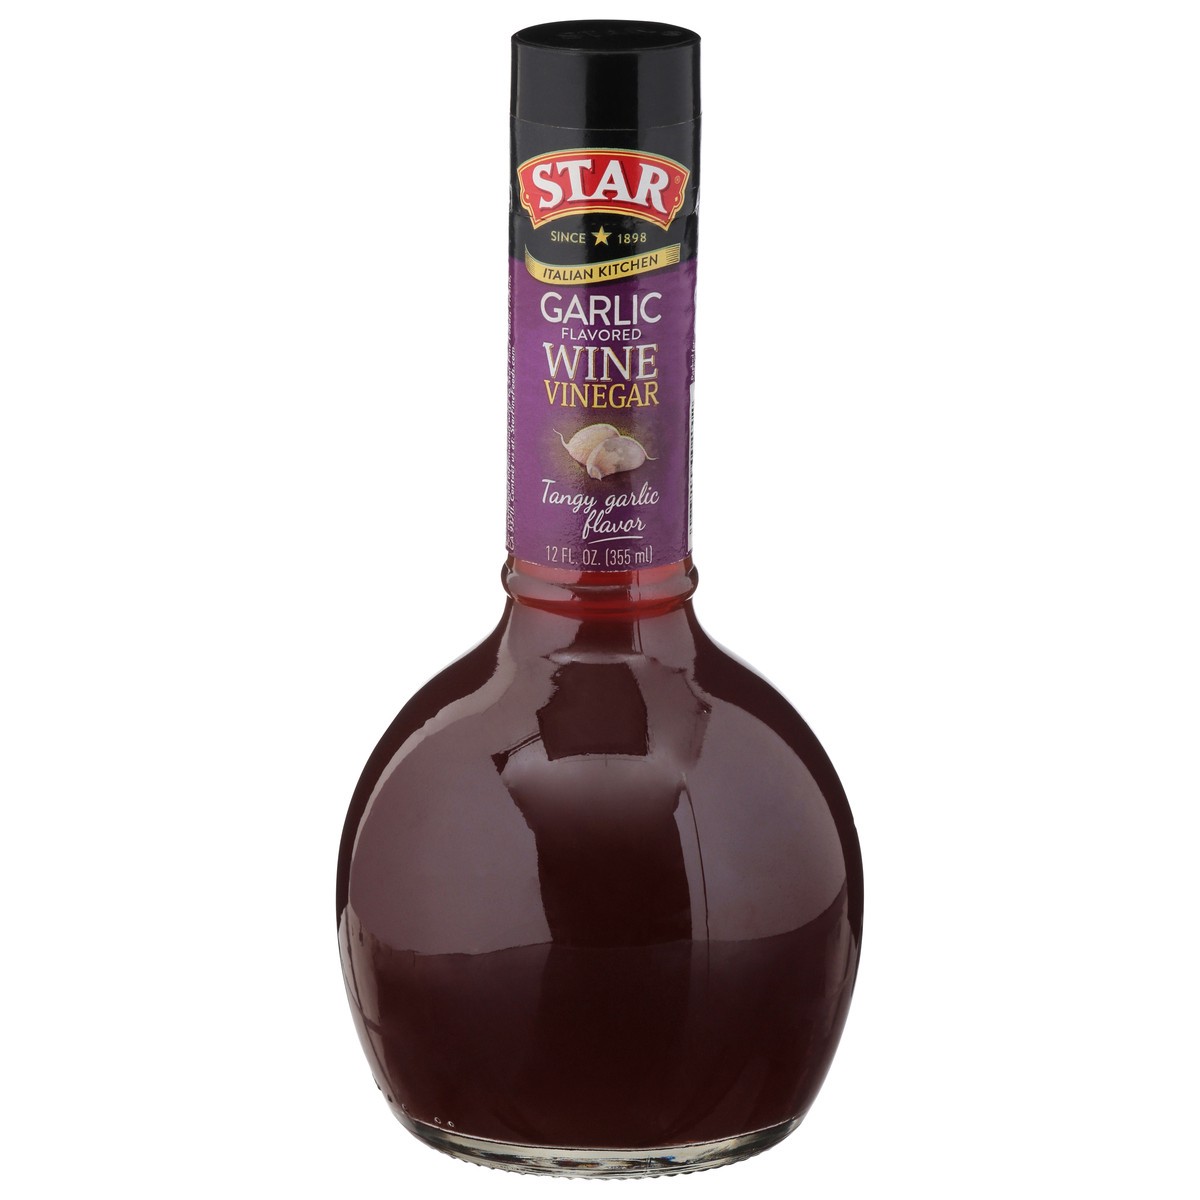 slide 1 of 10, STAR Italian Kitchen Wine Garlic Flavored Wine Vinegar 12 fl oz, 